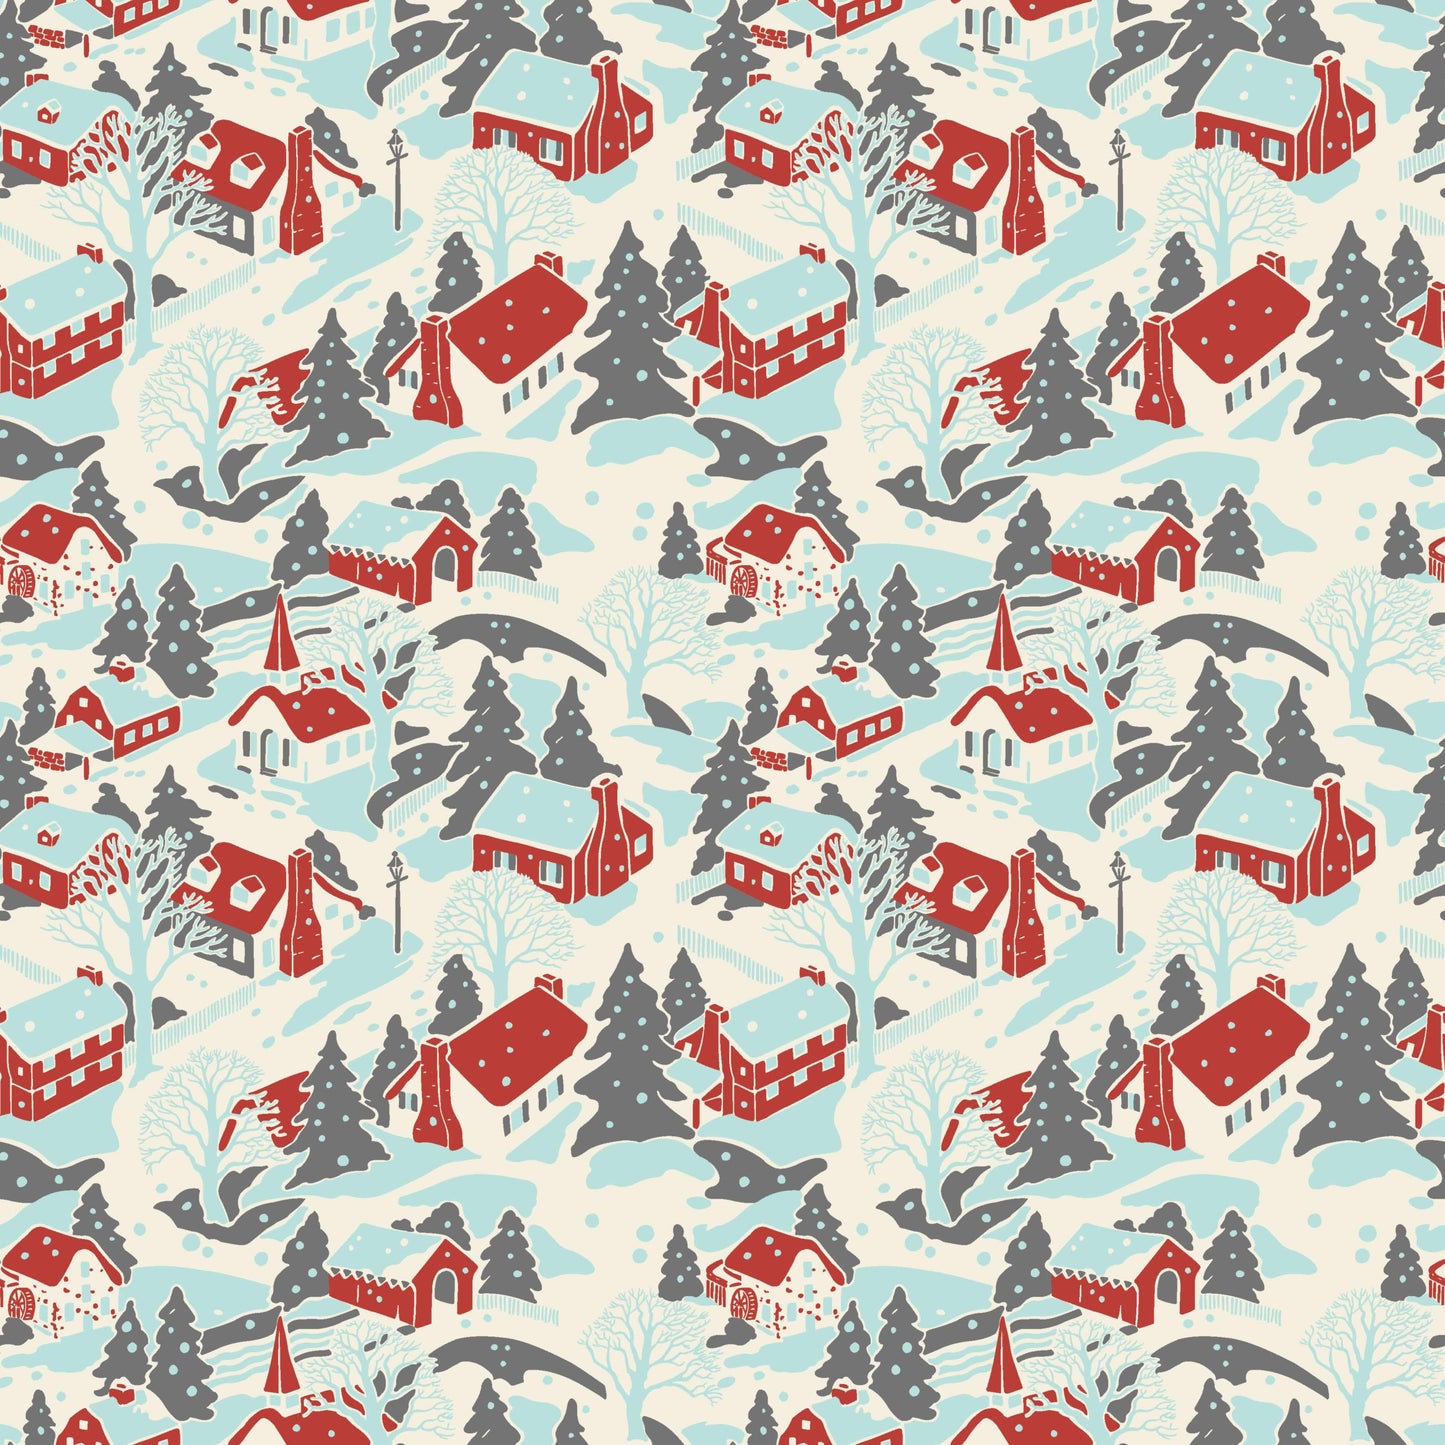 Makower Christmas Fabric Retro HoHo Winter Village Artic Blue A574B